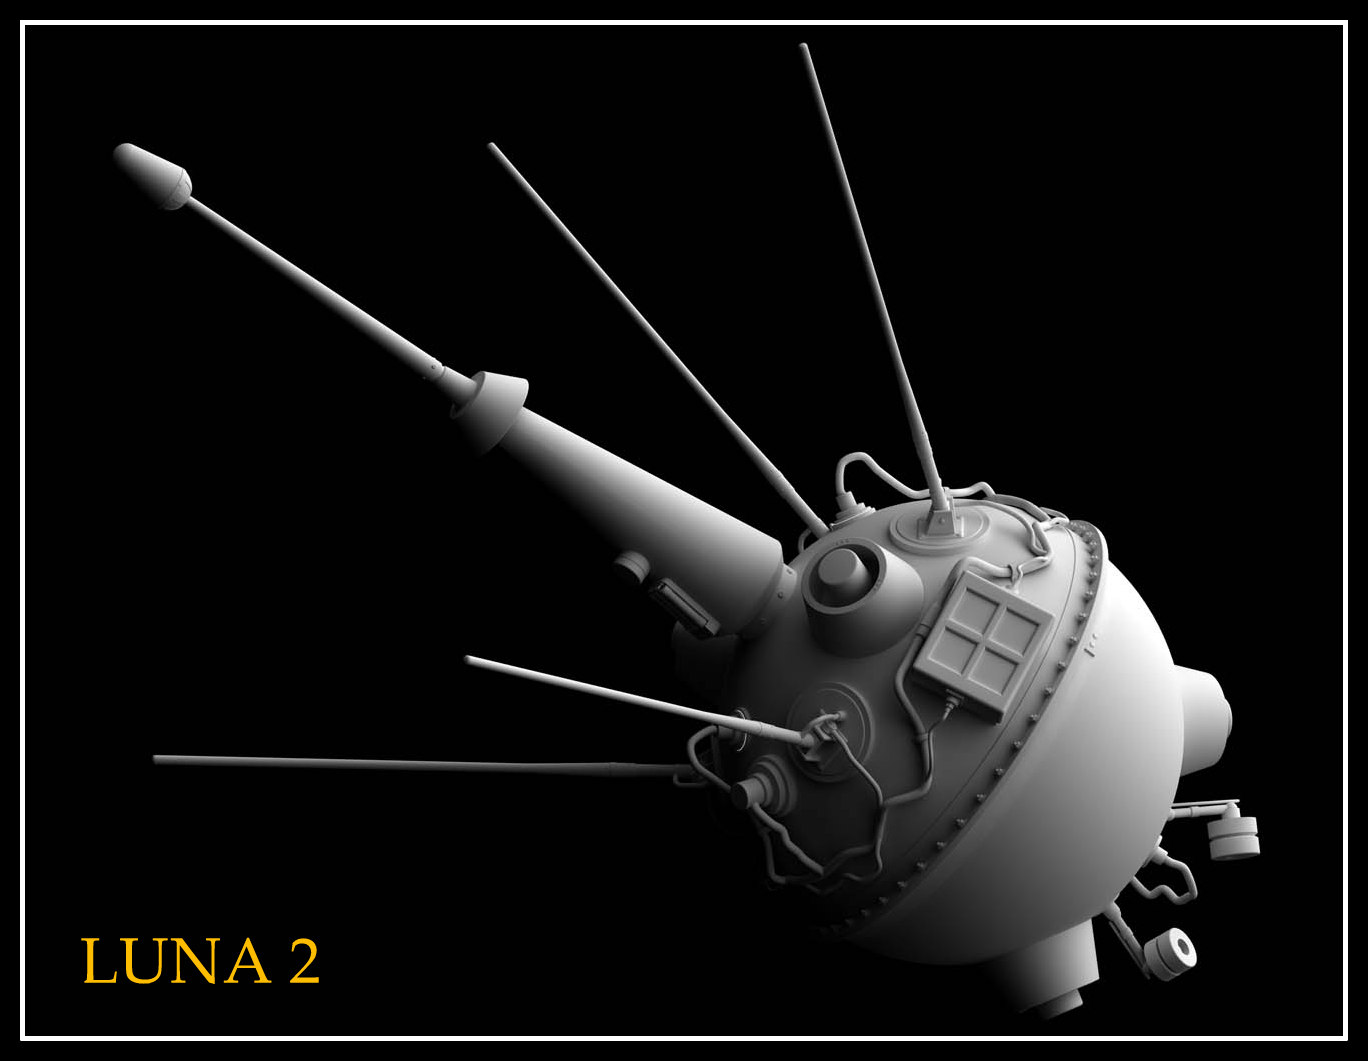 АМС Луна 1. Автрматическаямежпланетнаястанциялуна2. АМС Луна 2. Советская межпланетная станция «Луна-1».